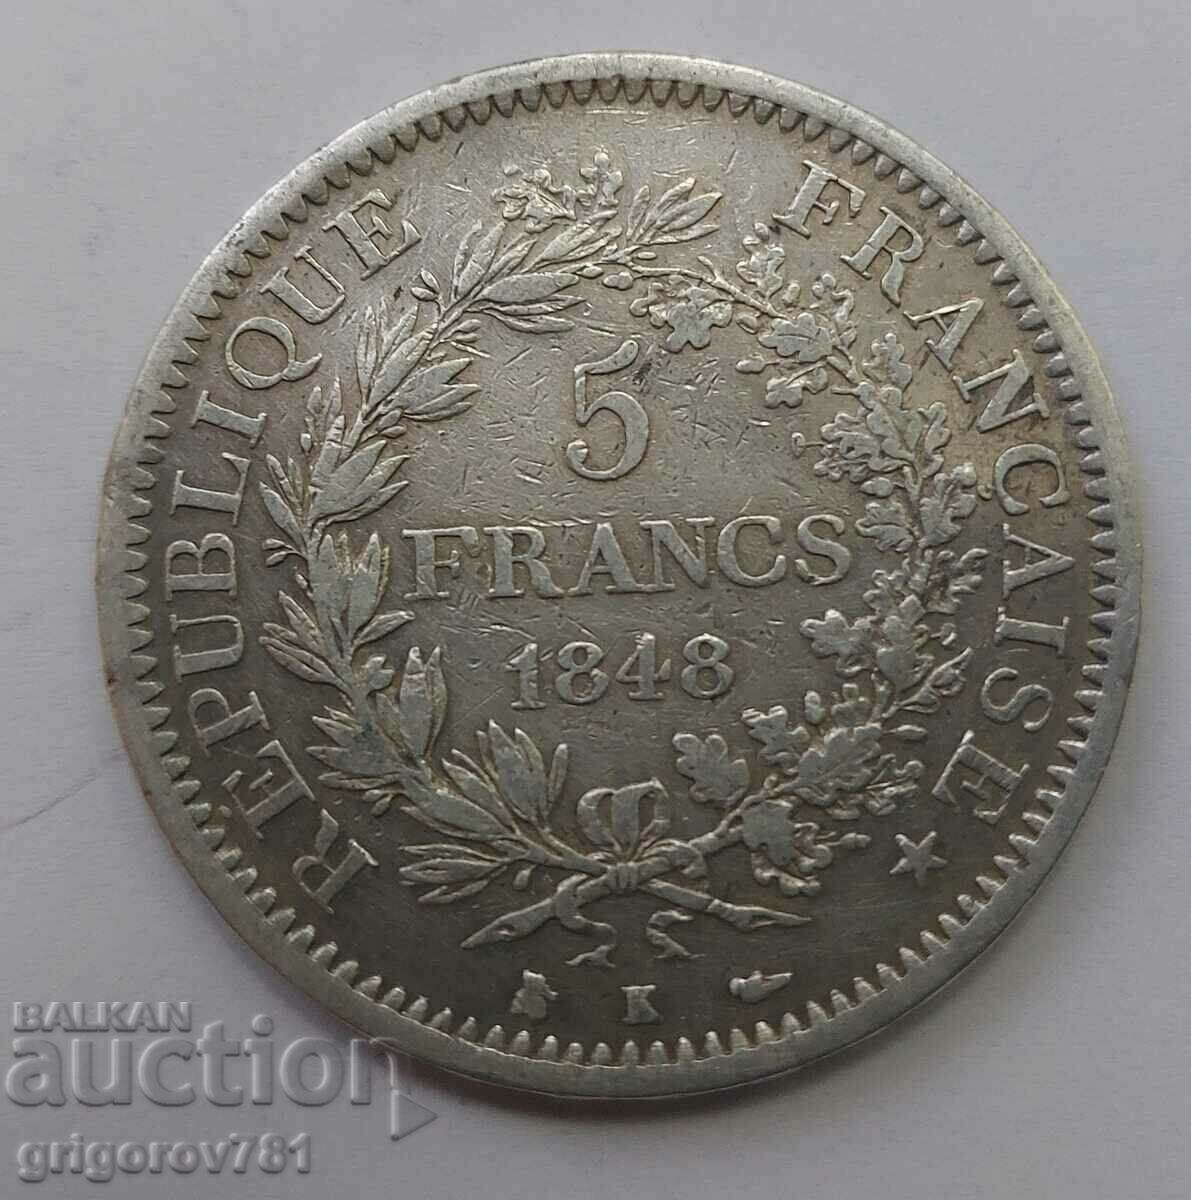 5 Franci Argint Franta 1848 K - Moneda de argint #92